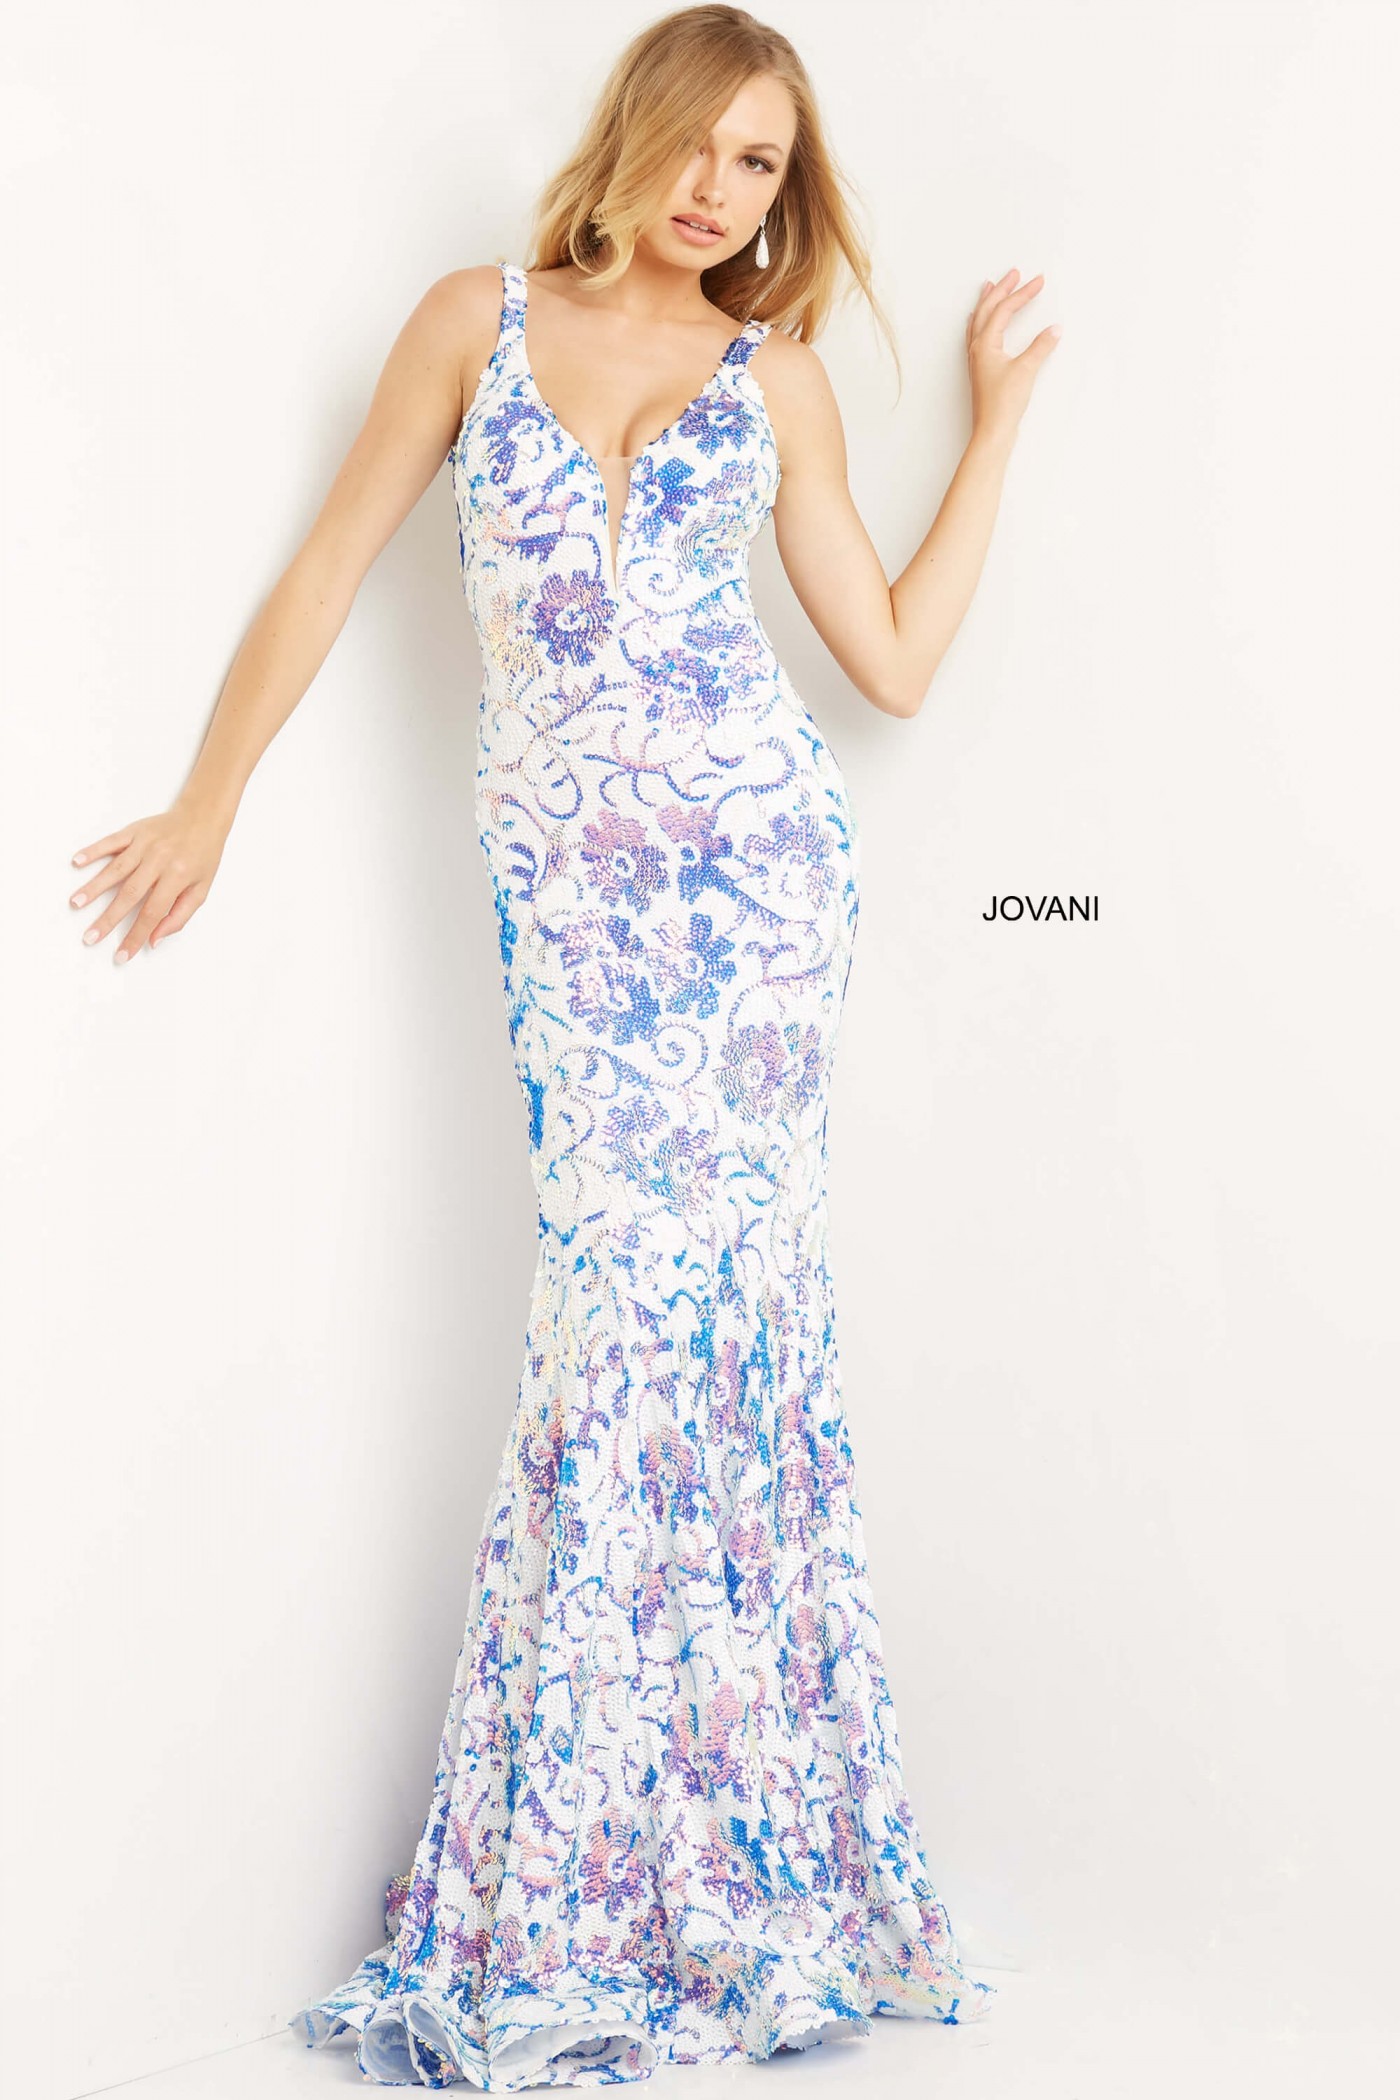 Jovani 08257 Floral Patter Sequin Prom Dress